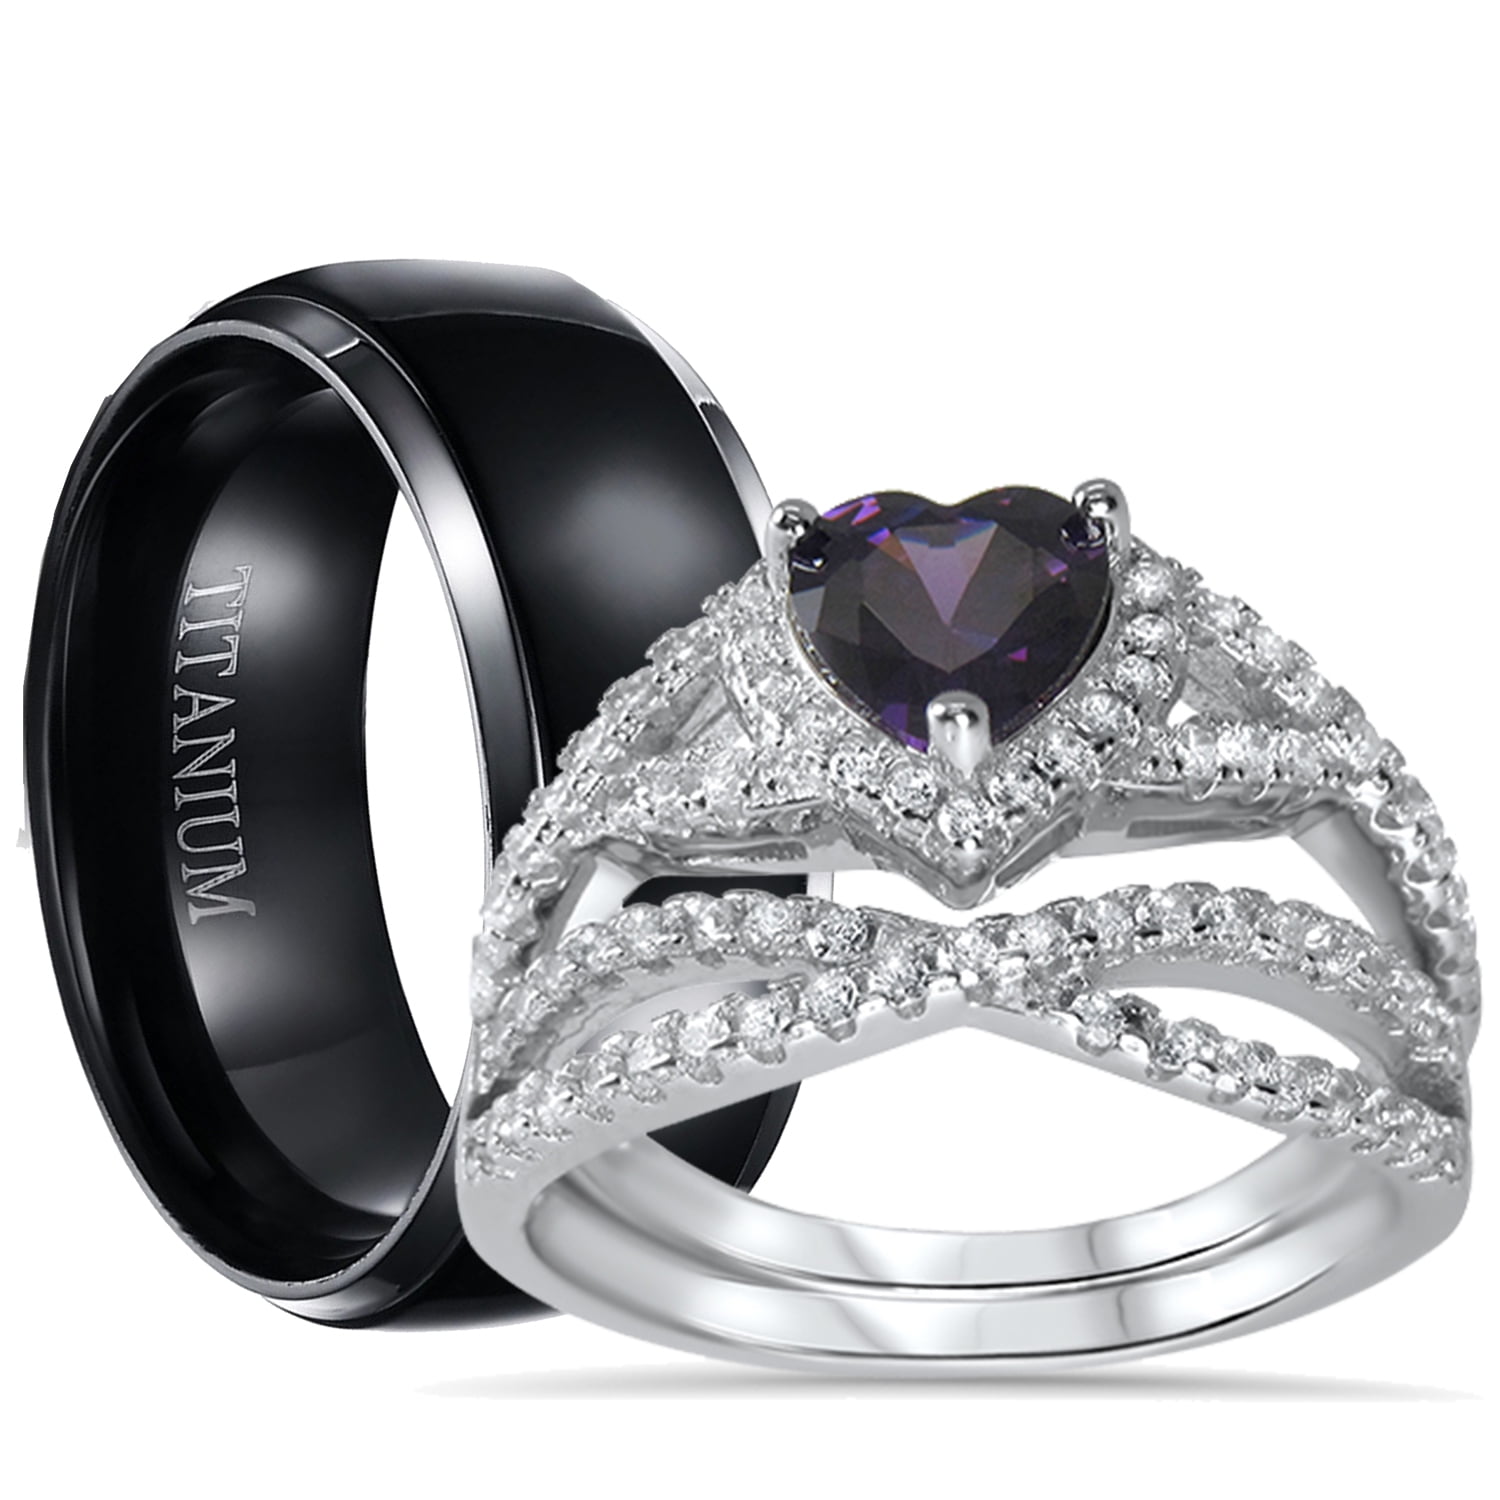 Brilliant Round Amethyst w Clear CZ Genuine Silver Wedding Engagement Ring Set